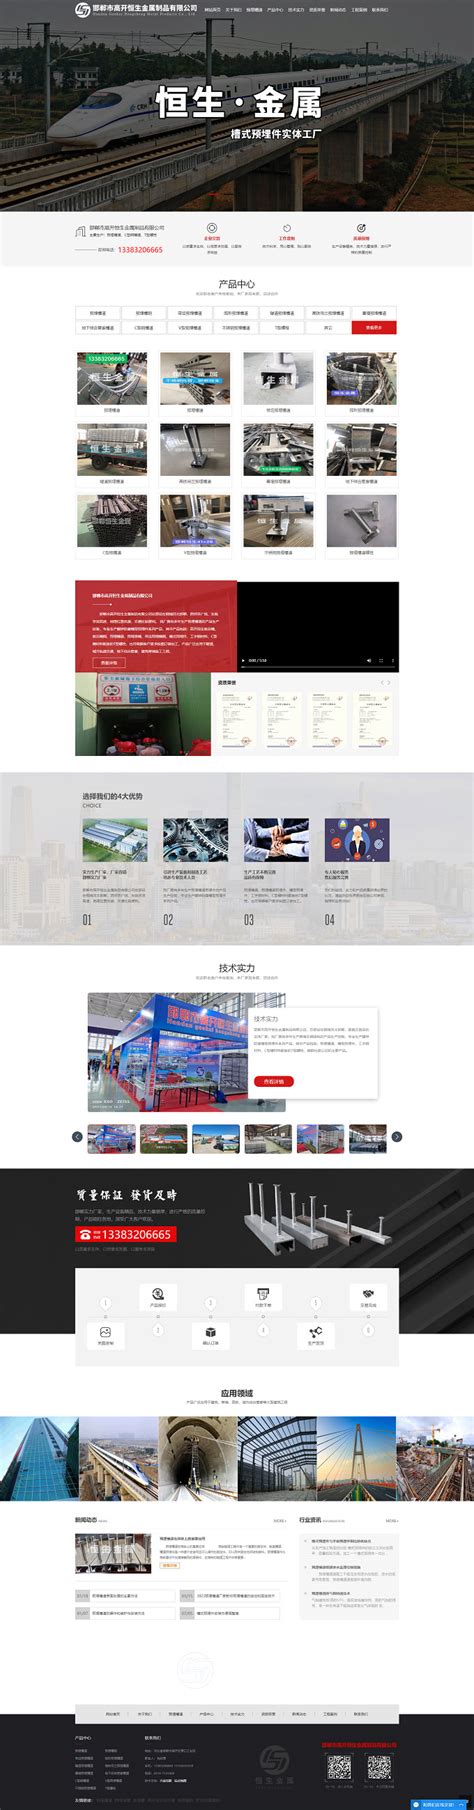 邯郸网站建设产品设计公司